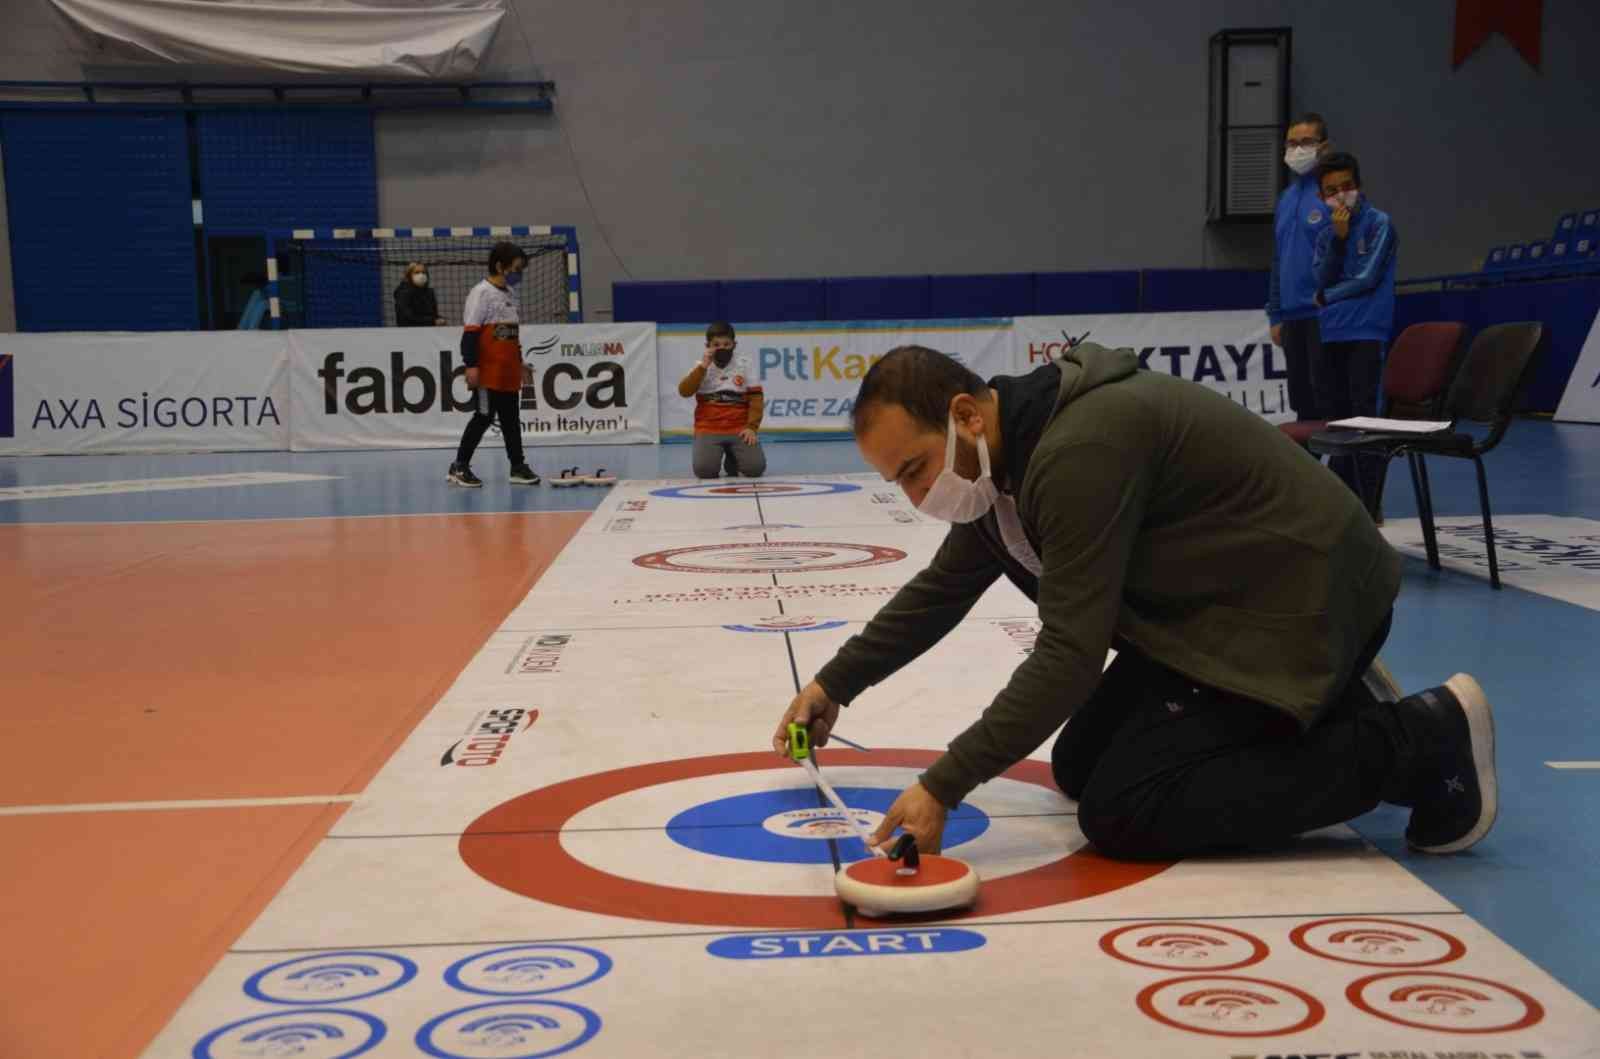 Curling Gençler ve Yıldızlar Turnuvası, start aldı #aydin